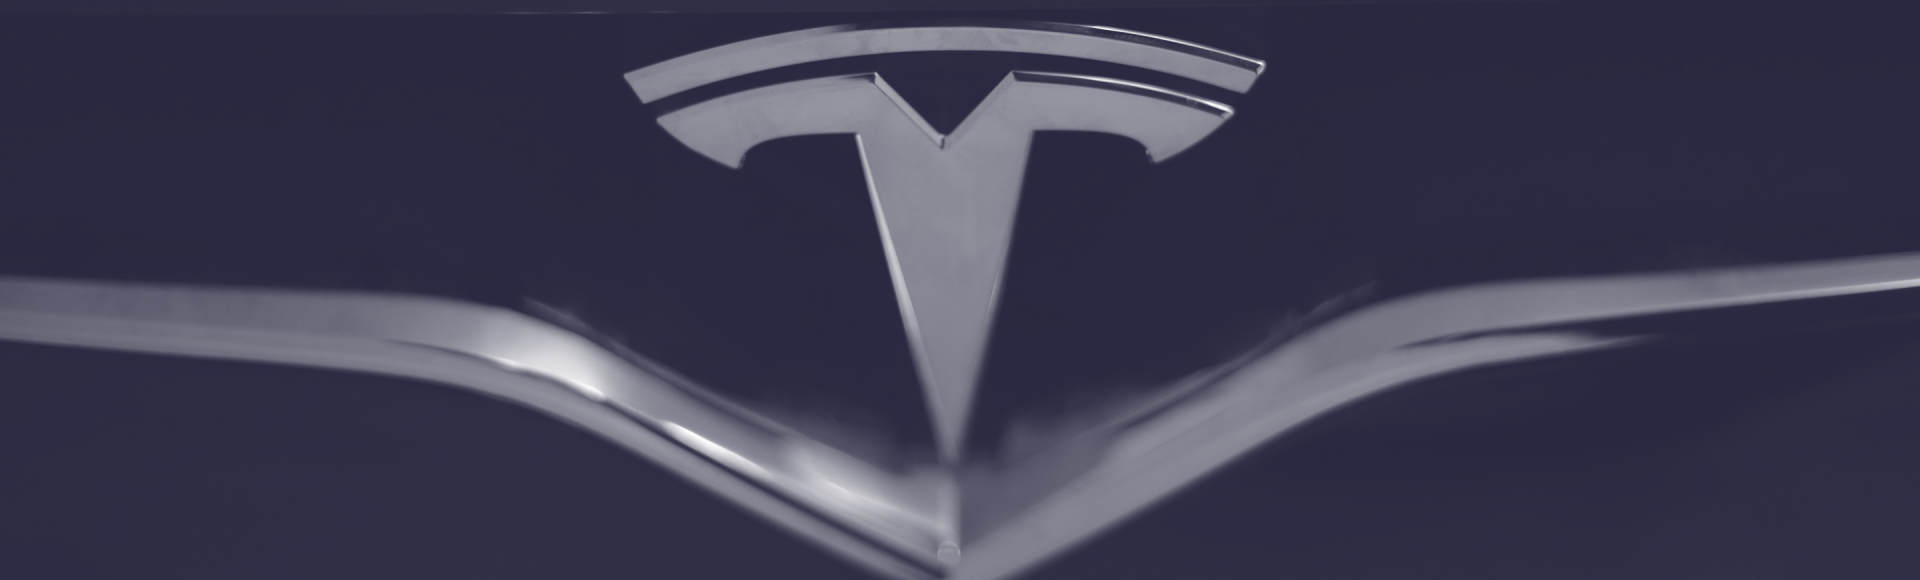 ARK-Invest_Blog-Banner_2019_05_22---Tesla-Valuation